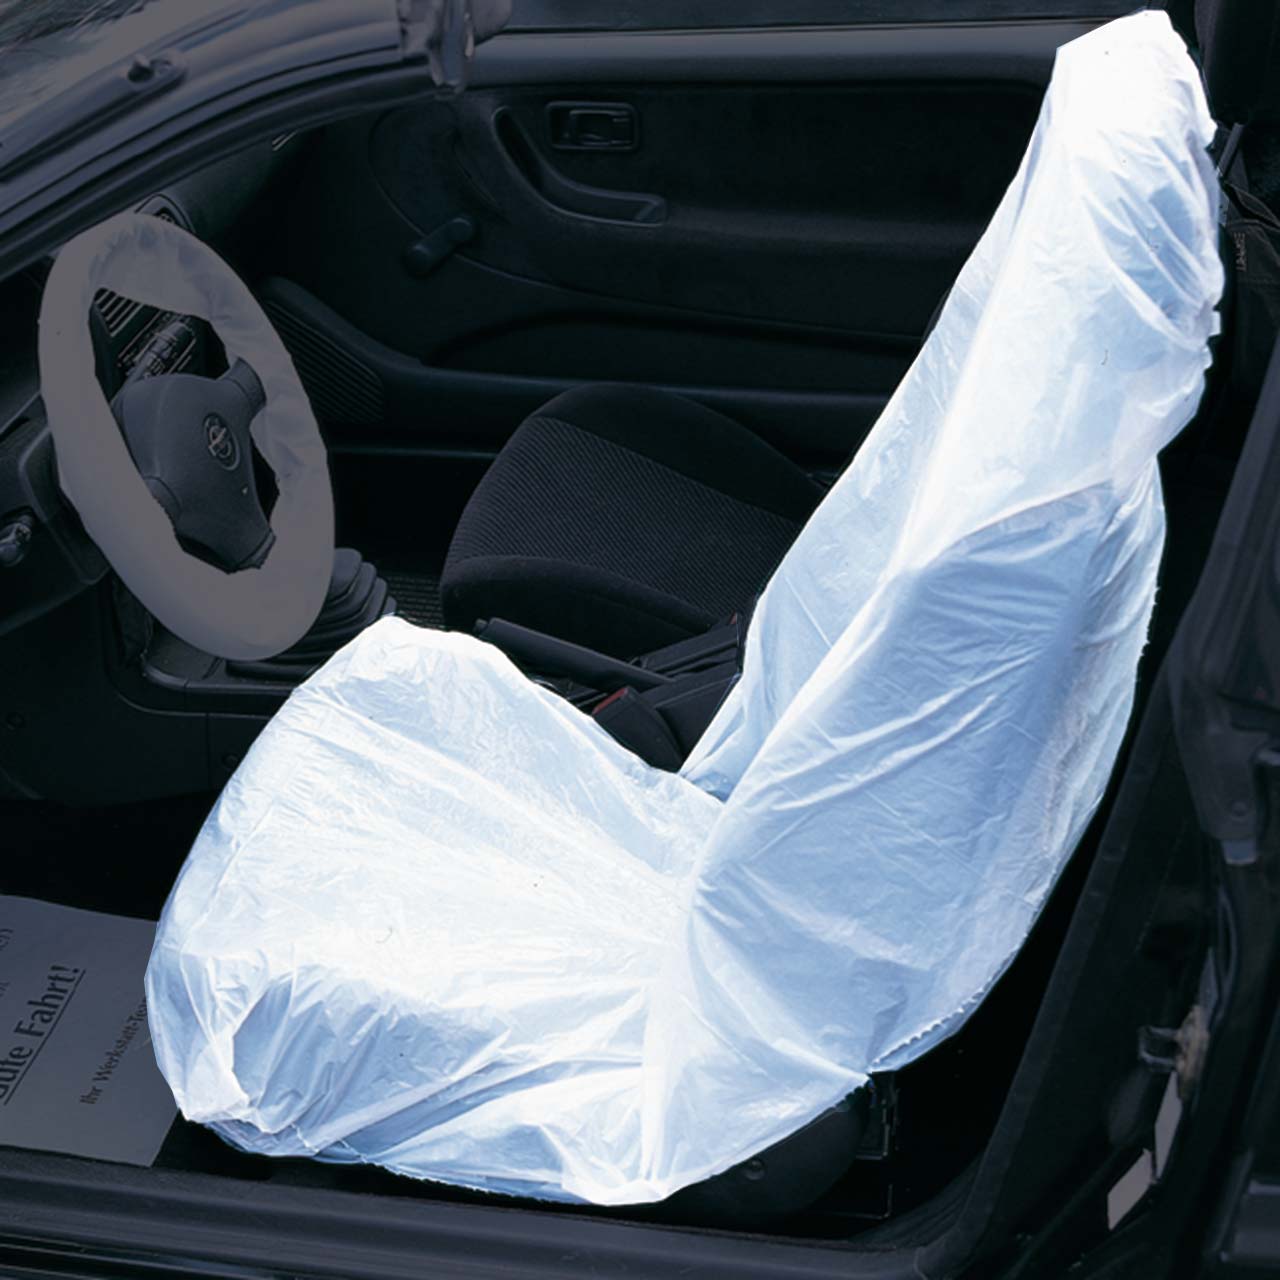 Sitzschoner fürs Auto: Schütze deine Sitze effektiv!